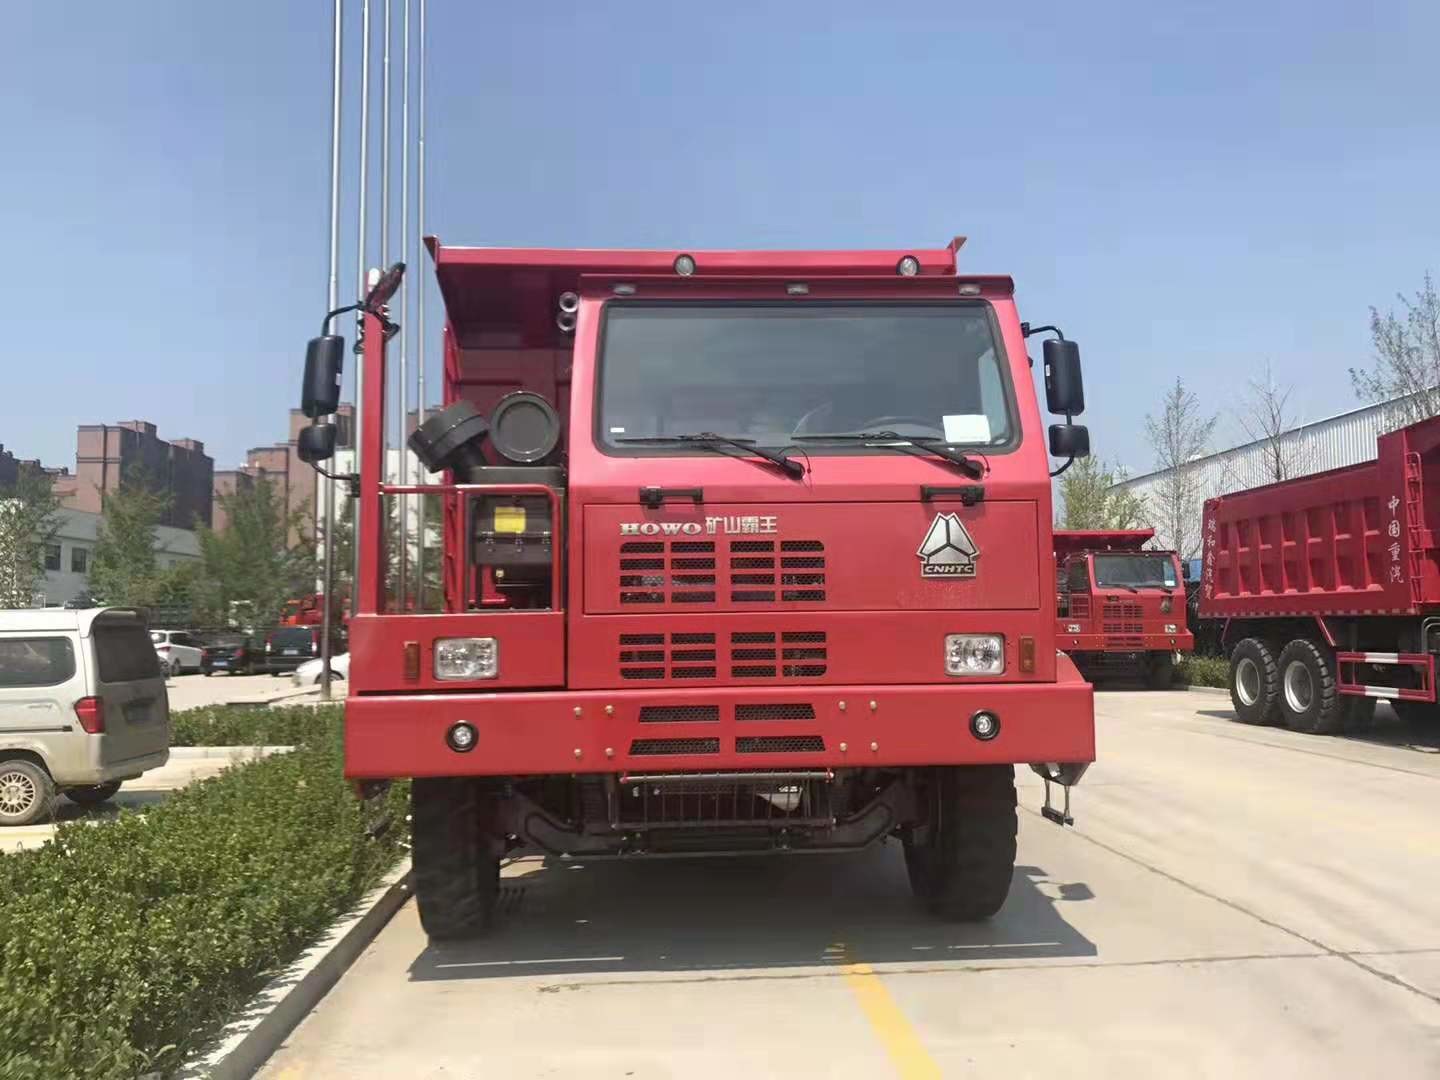 Caminhão basculante de mineração pesado 6*4 da cor vermelha/tipo transmissão manual 30 toneladas de caminhão de caminhão basculante